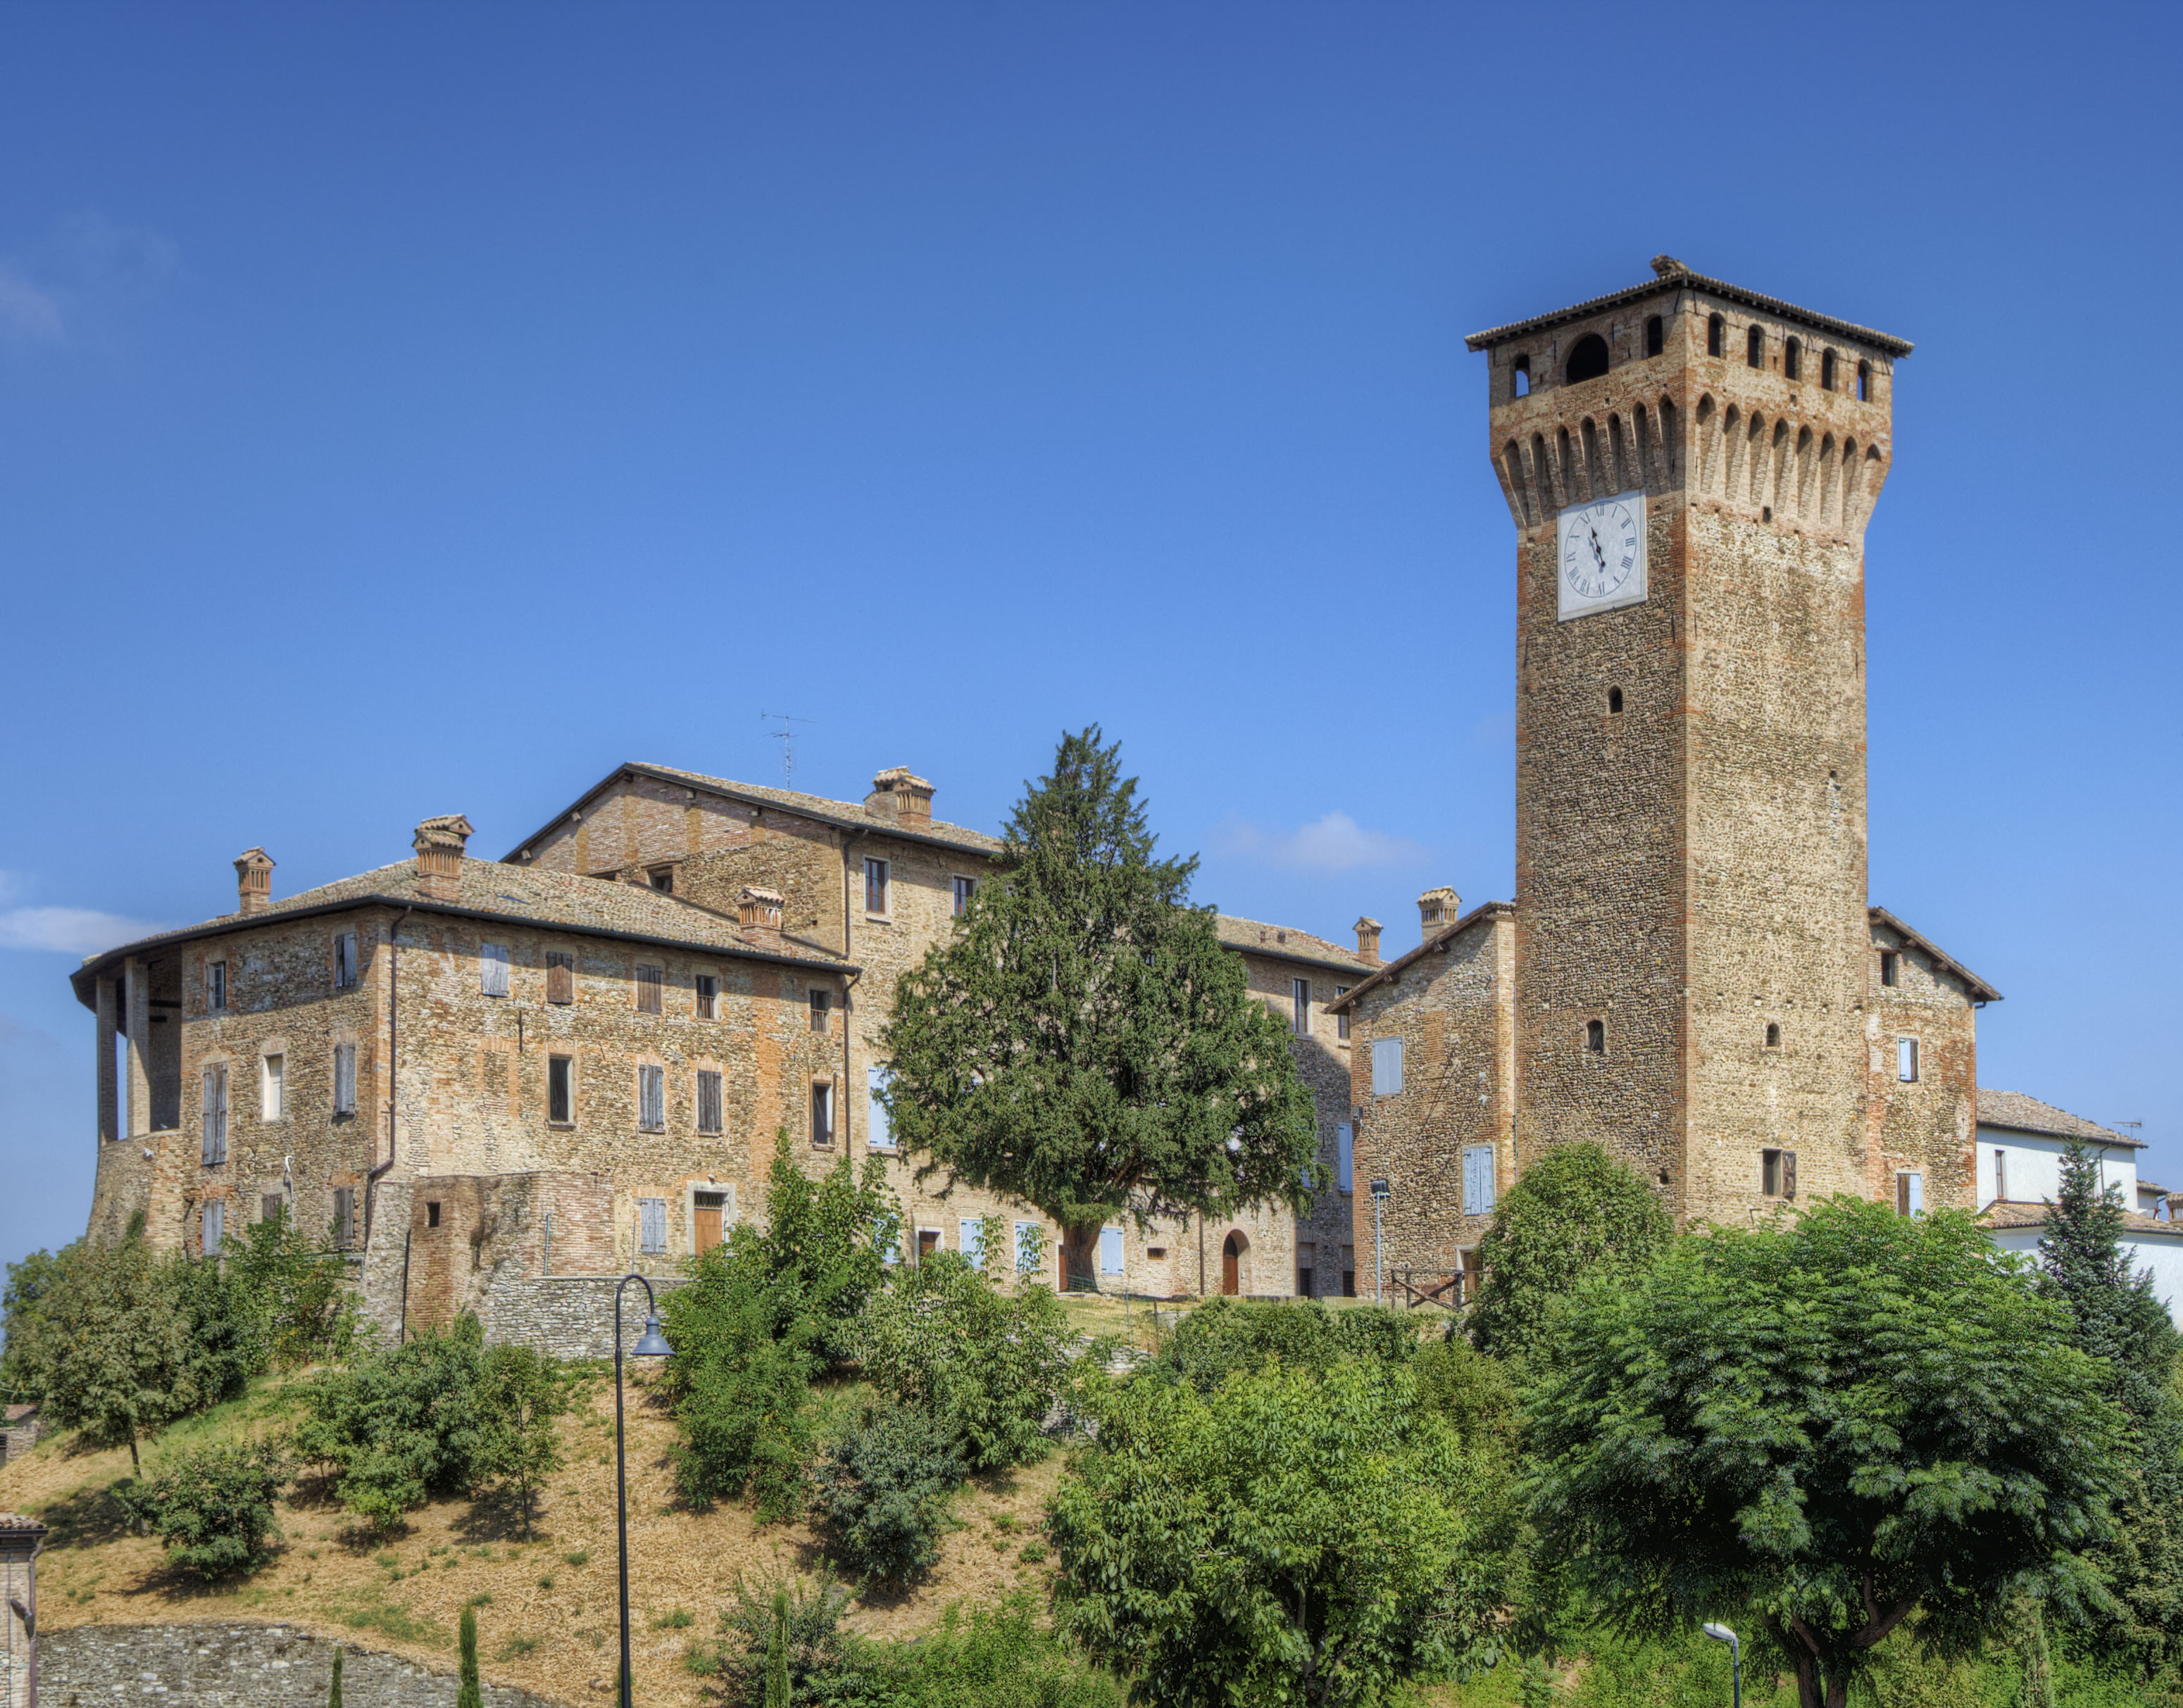 foto: https://upload.wikimedia.org/wikipedia/commons/3/39/Castello_di_Levizzano_Castelvetro.jpg